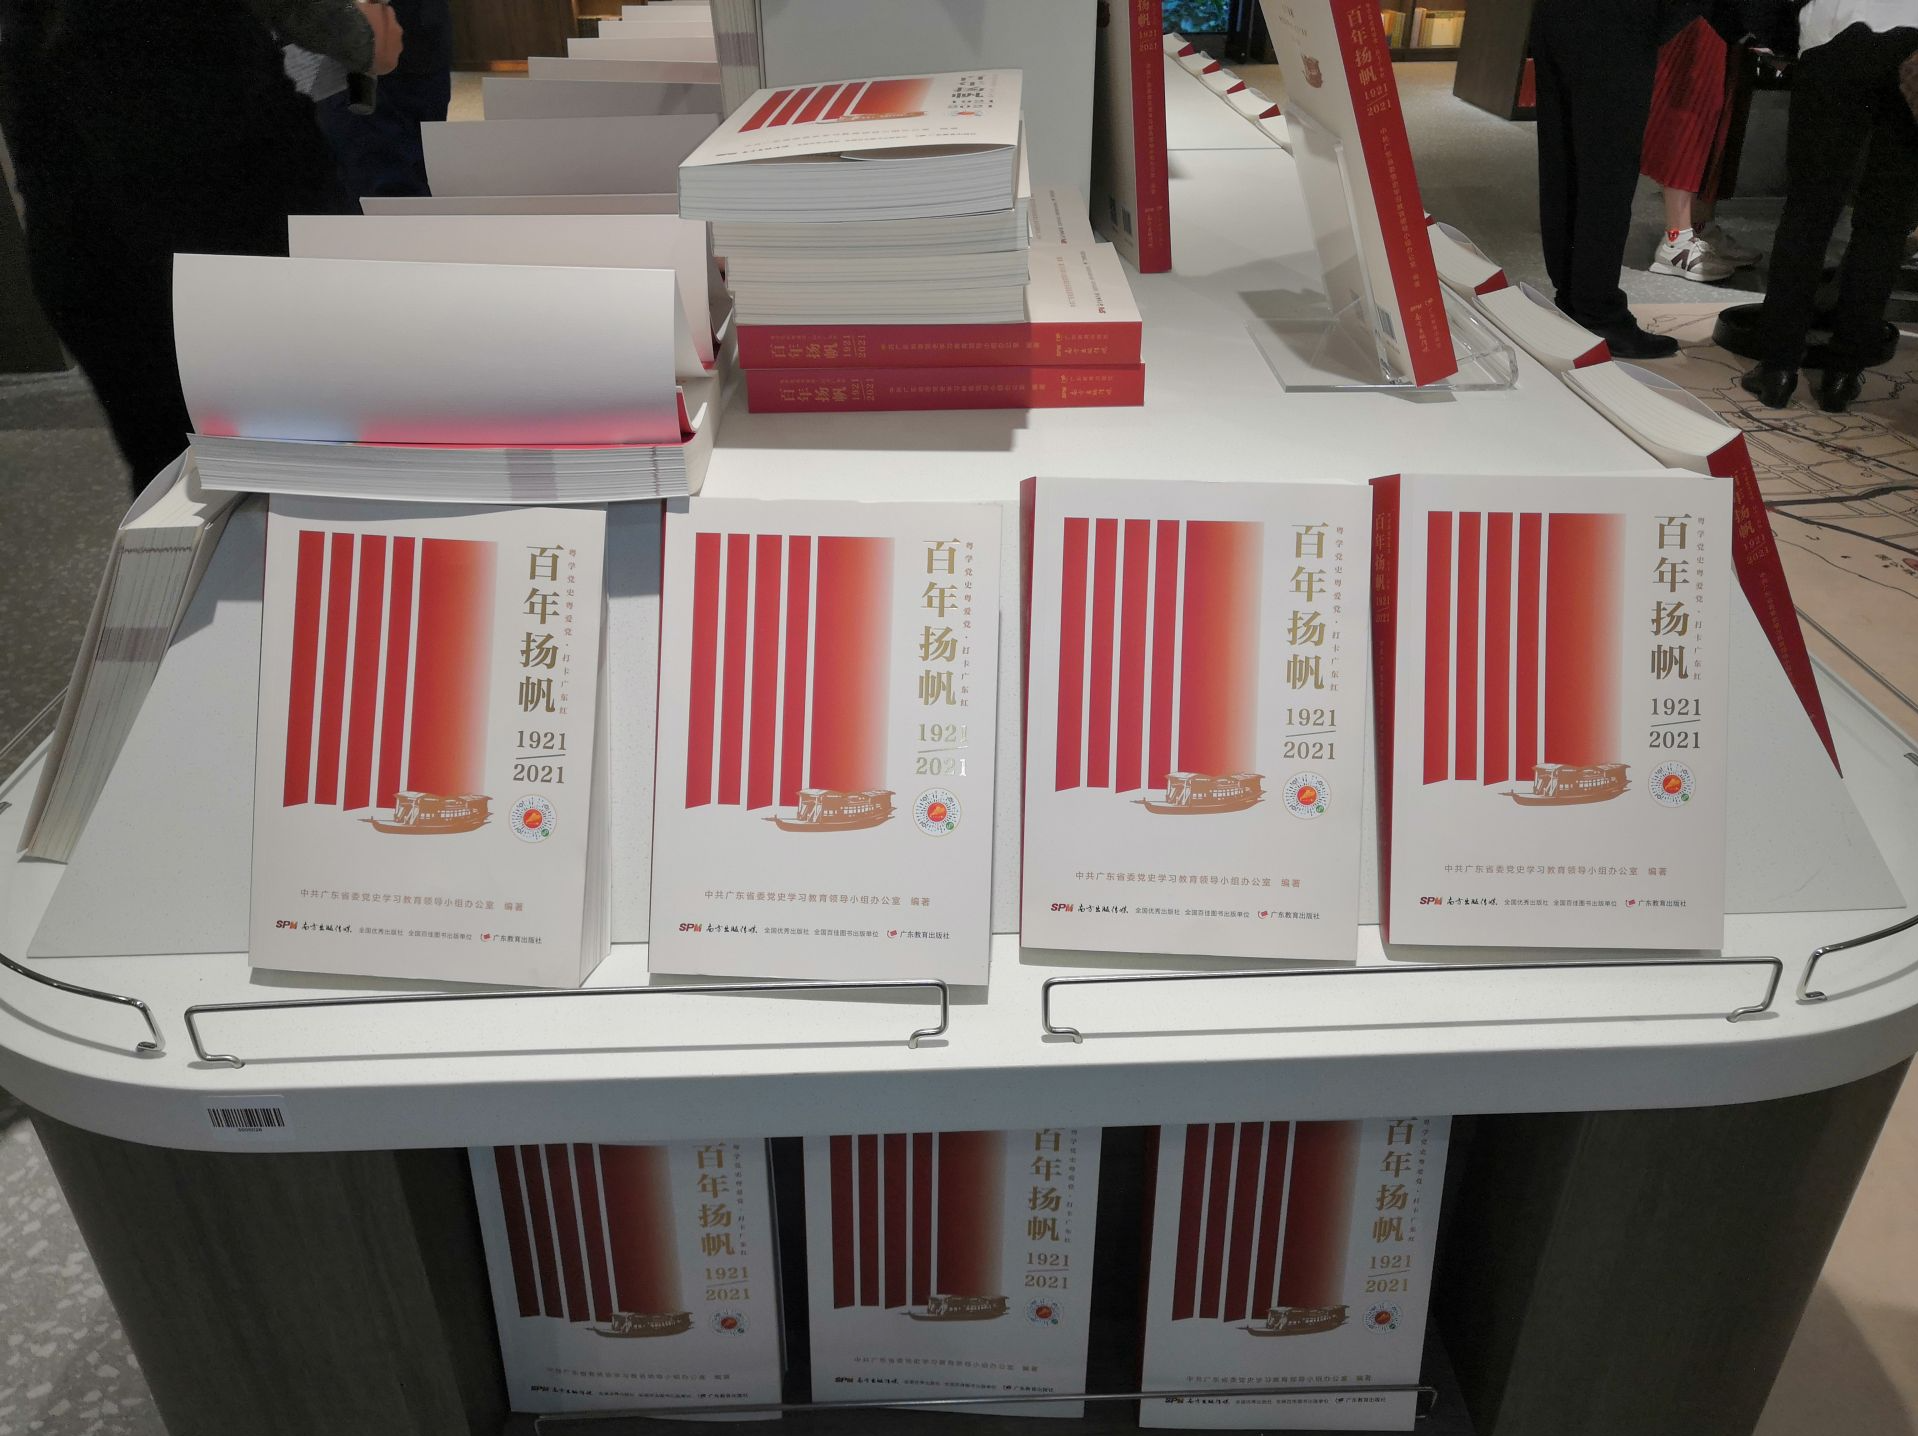 《百年扬帆——粤学党史粤爱党·打卡广东红》新书首发式在广州举行